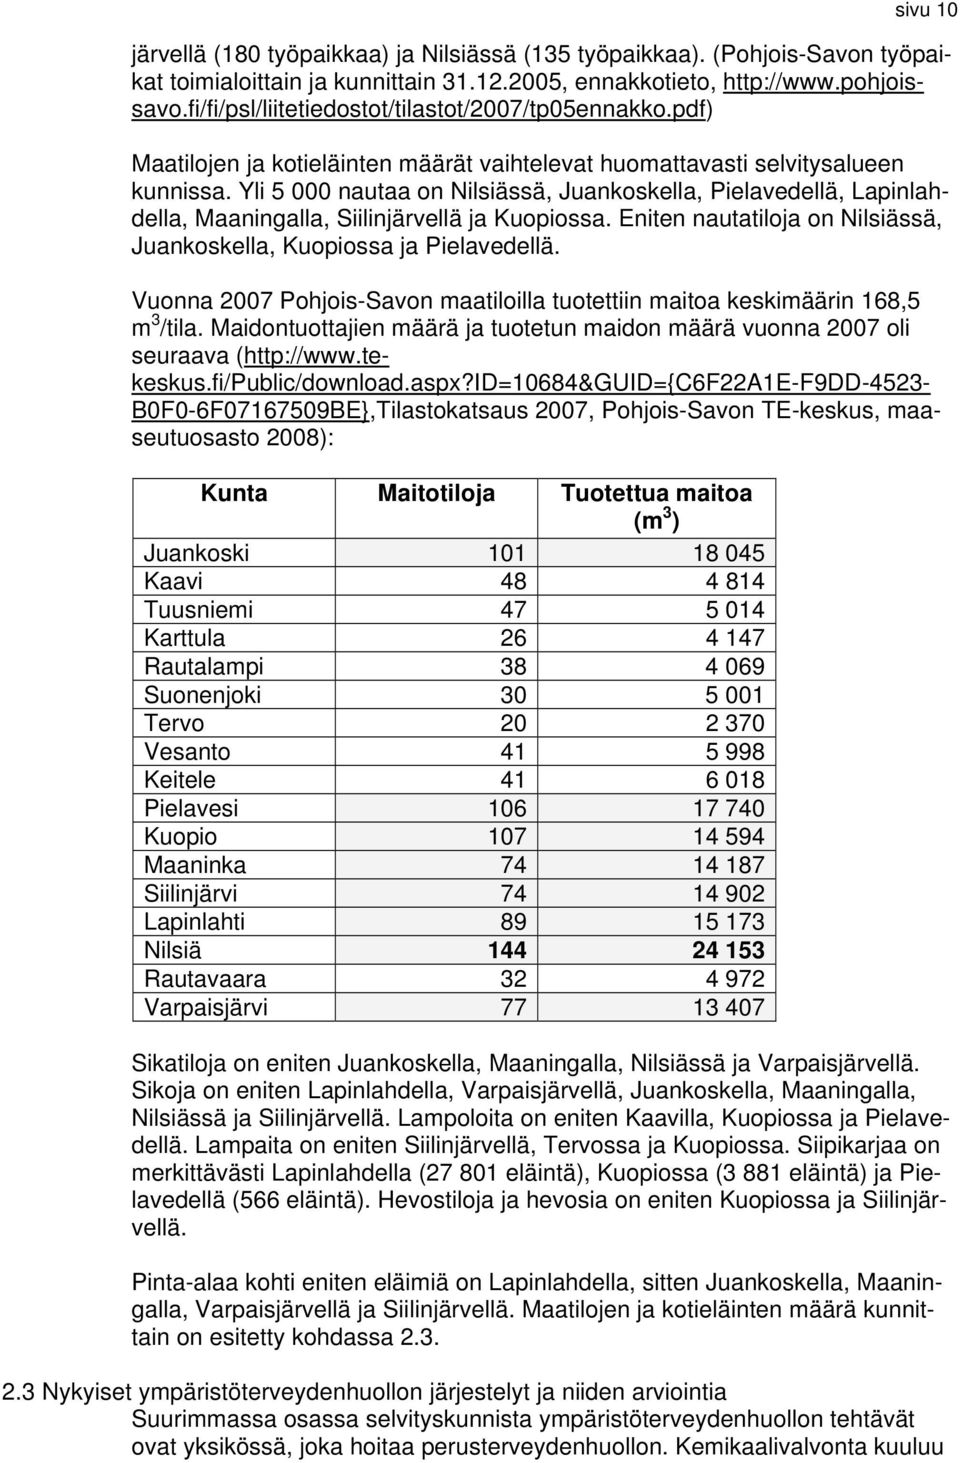 Yli 5 000 nautaa on Nilsiässä, Juankoskella, Pielavedellä, Lapinlahdella, Maaningalla, Siilinjärvellä ja Kuopiossa. Eniten nautatiloja on Nilsiässä, Juankoskella, Kuopiossa ja Pielavedellä.